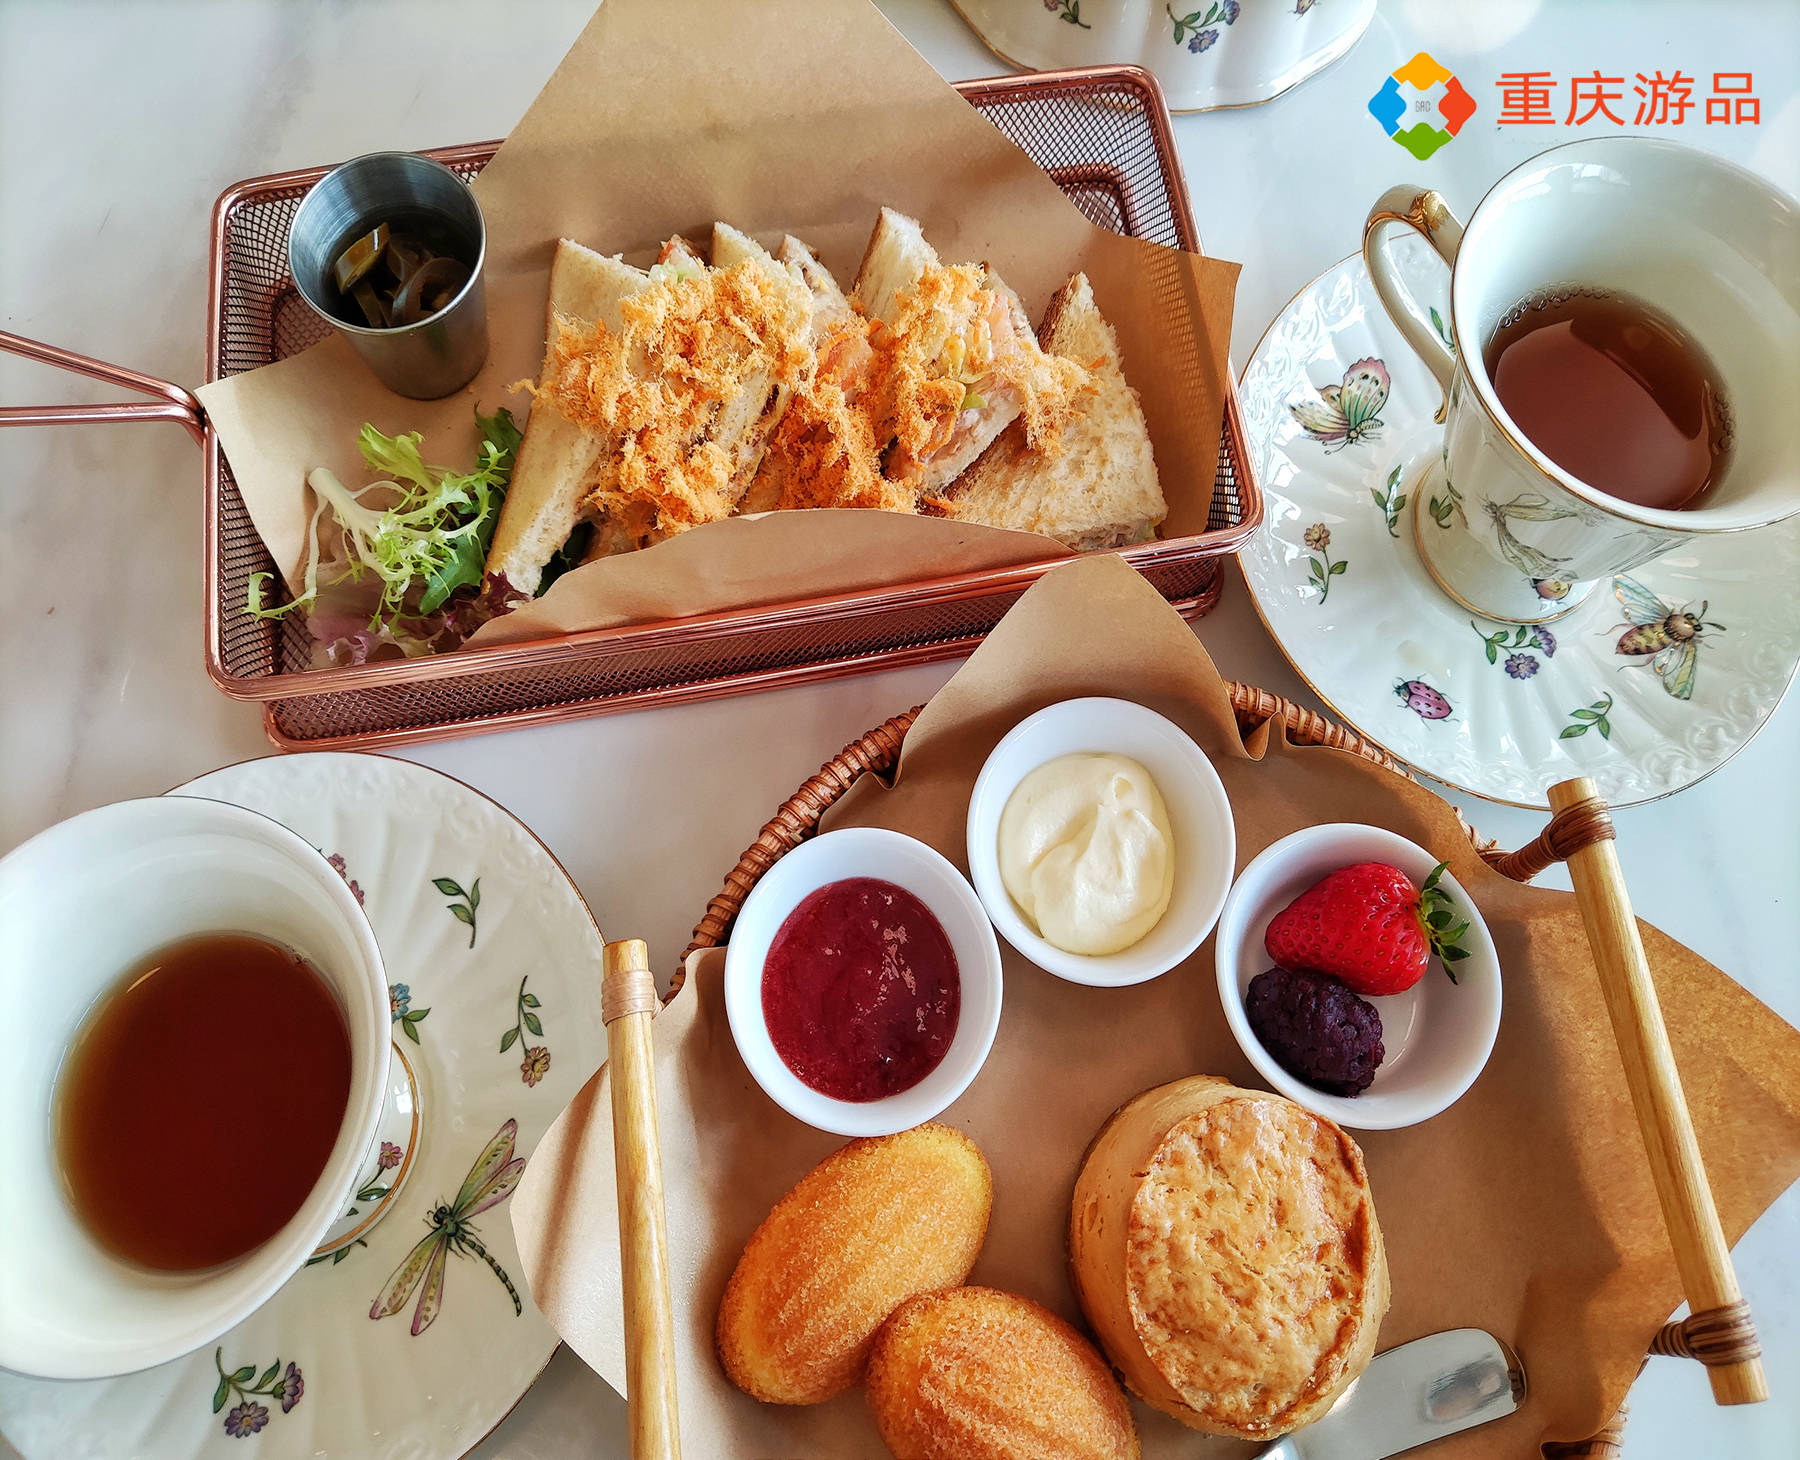 重庆可以720度看江景的下午茶，人均消费34，为何风评很低？